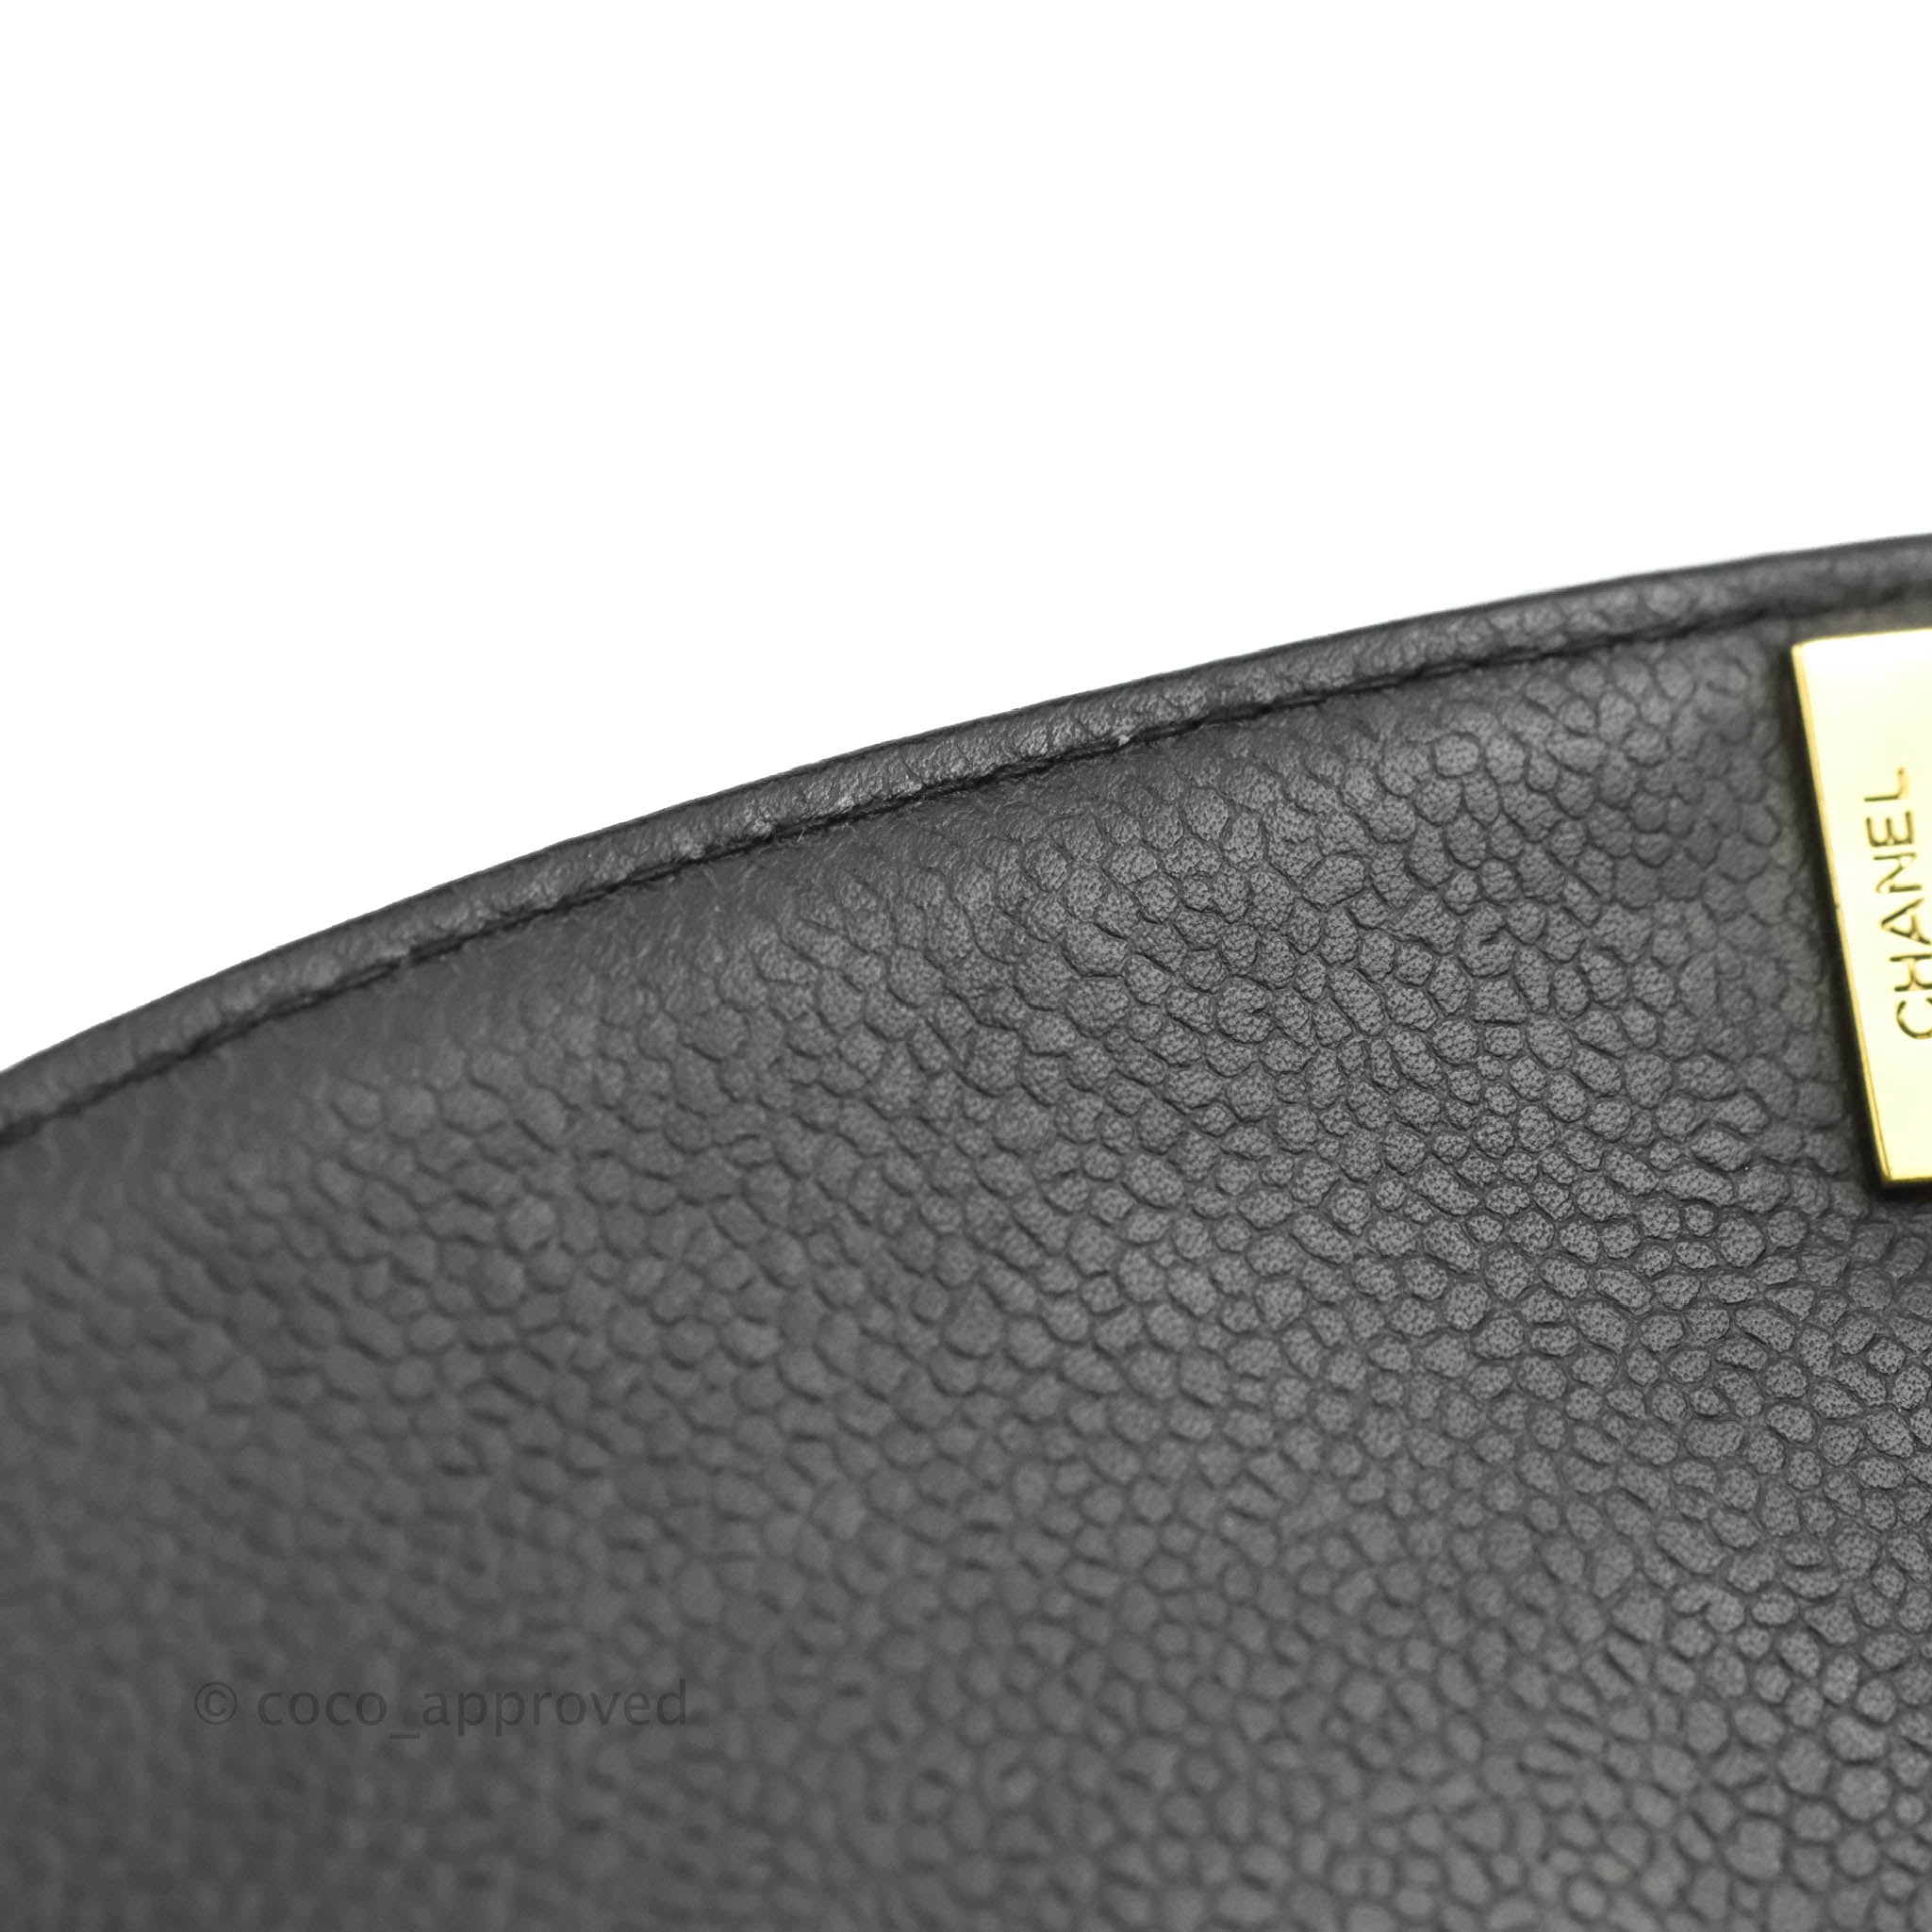 Chanel Diana Flap Bag - Black Shoulder Bags, Handbags - CHA962397